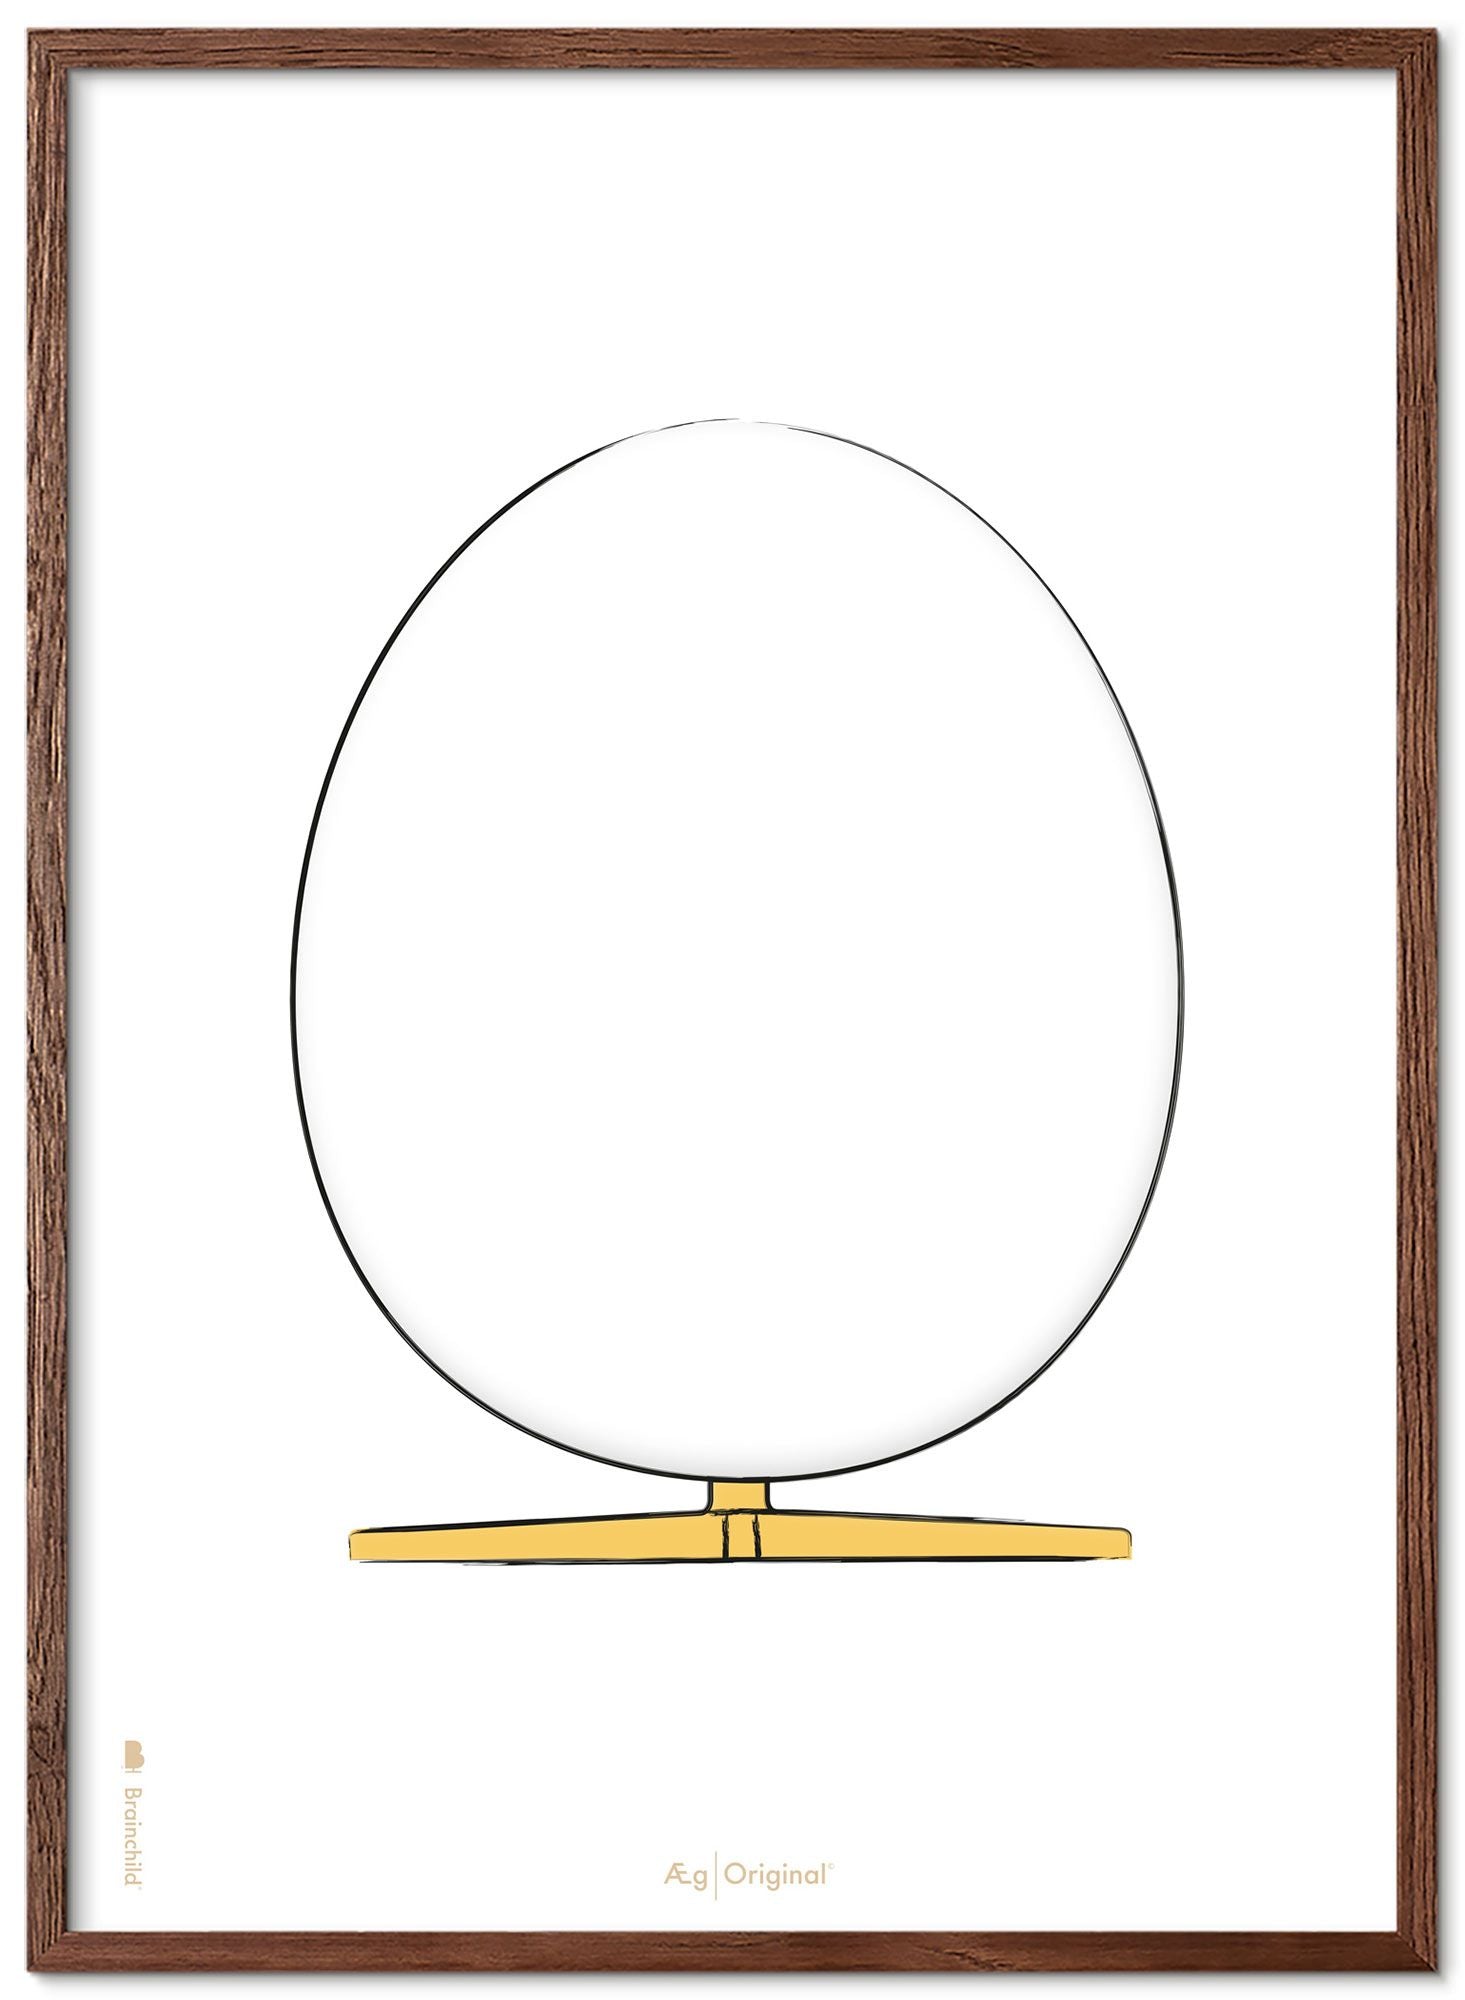 Prepare el marco de póster de boceto de diseño de huevo hecho de madera oscura de 70x100 cm, fondo blanco